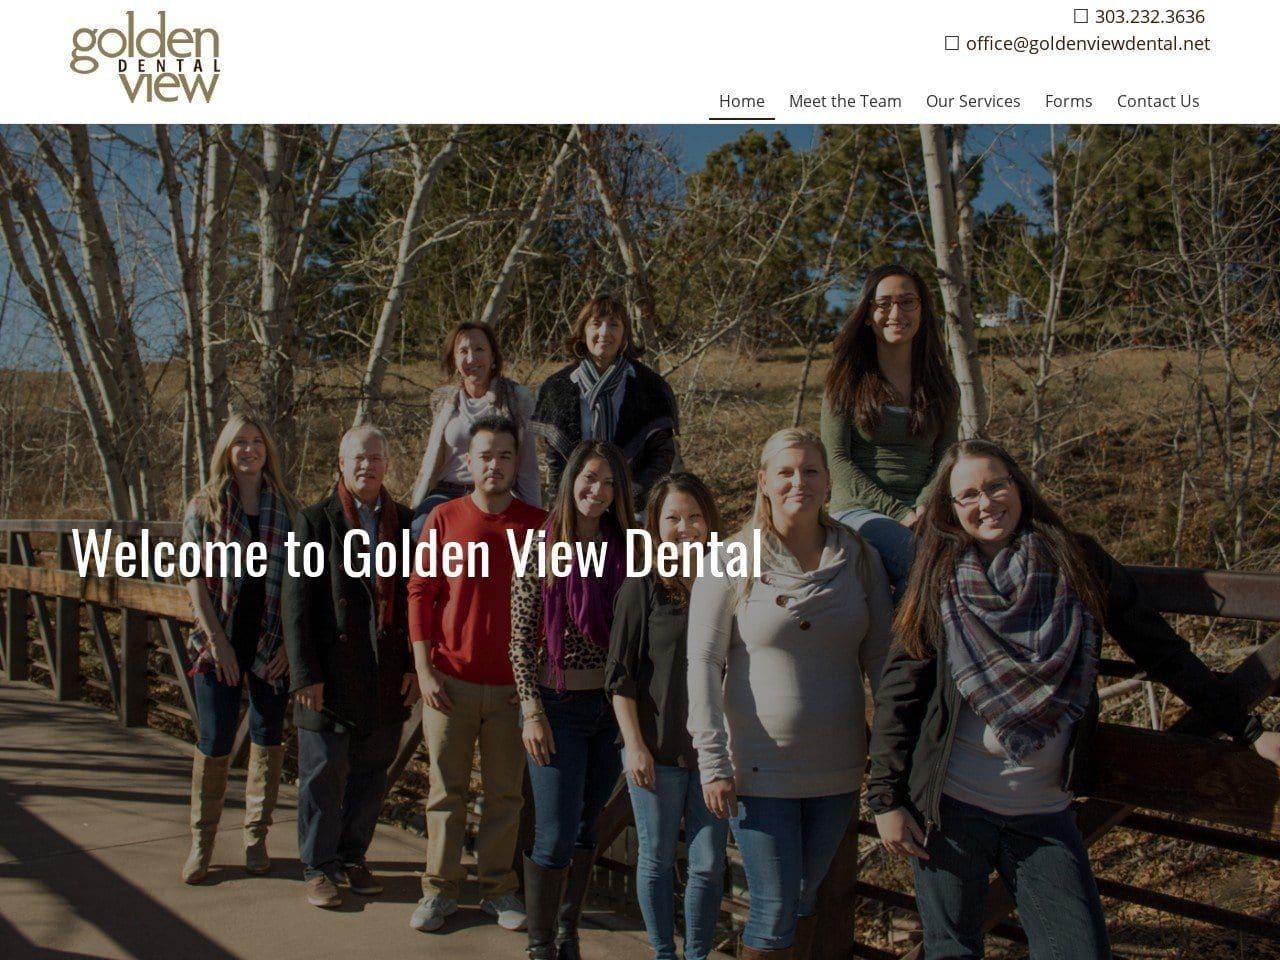 Golden View Dental Website Screenshot from goldenviewdental.net